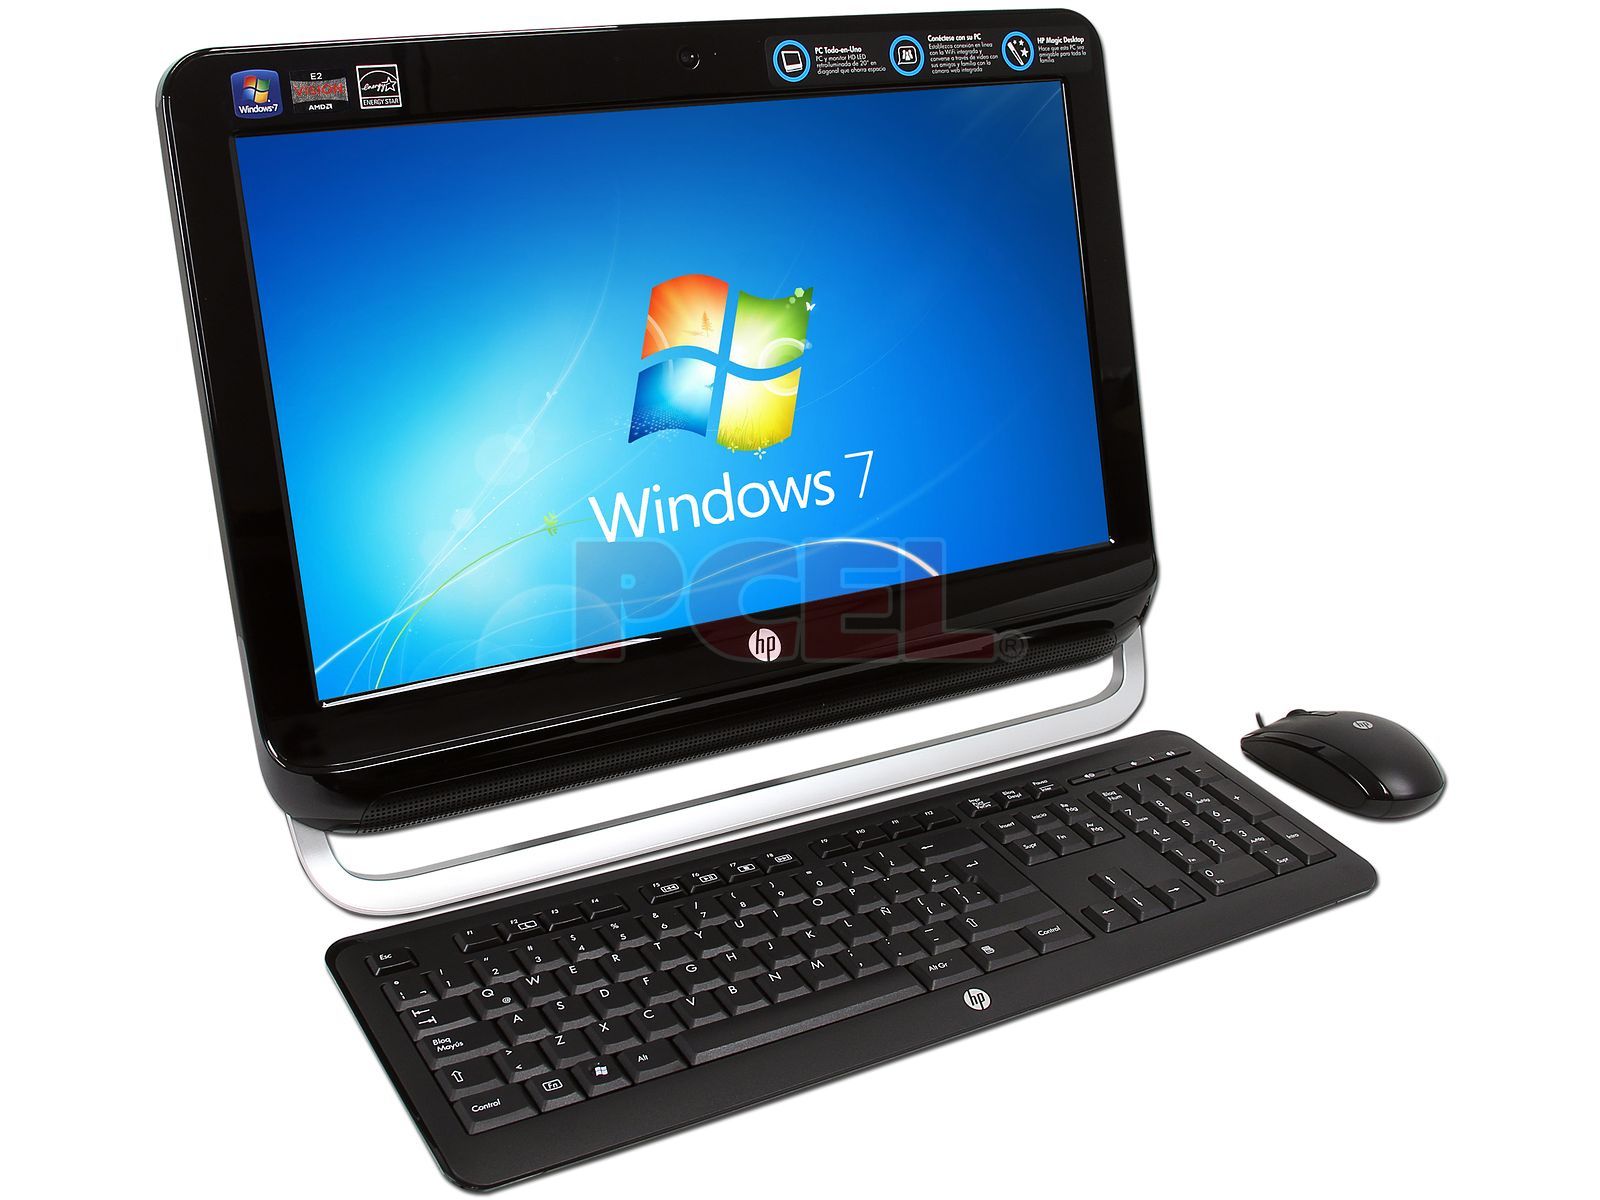 Omni 120-1106la Desktop PC